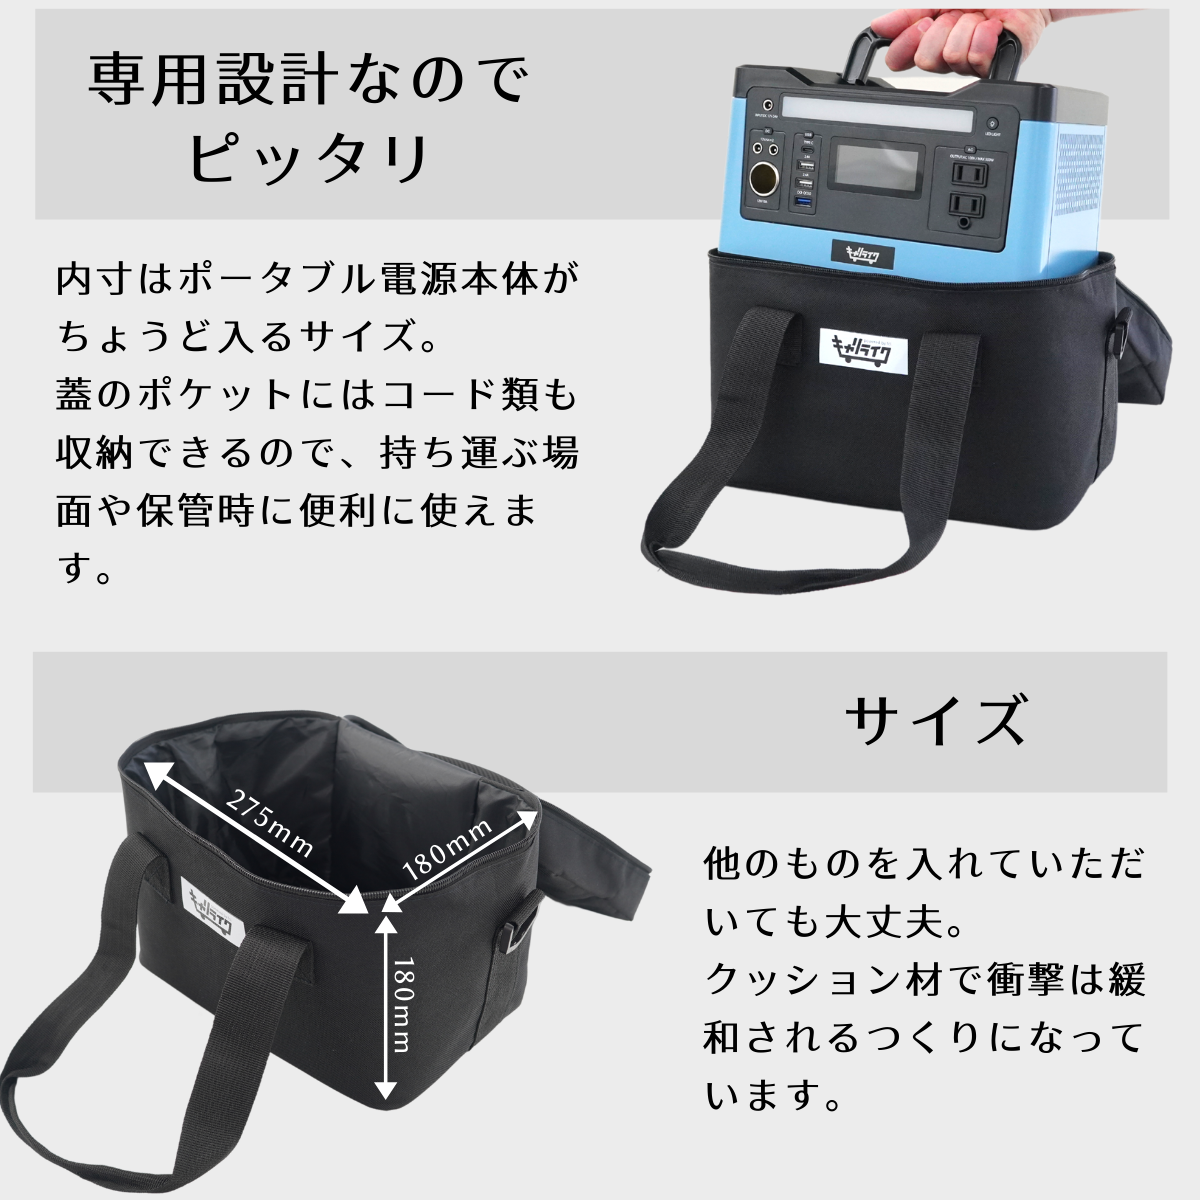 【キャリライク 公式通販】ポータブル電源 540wh 専用バッグ